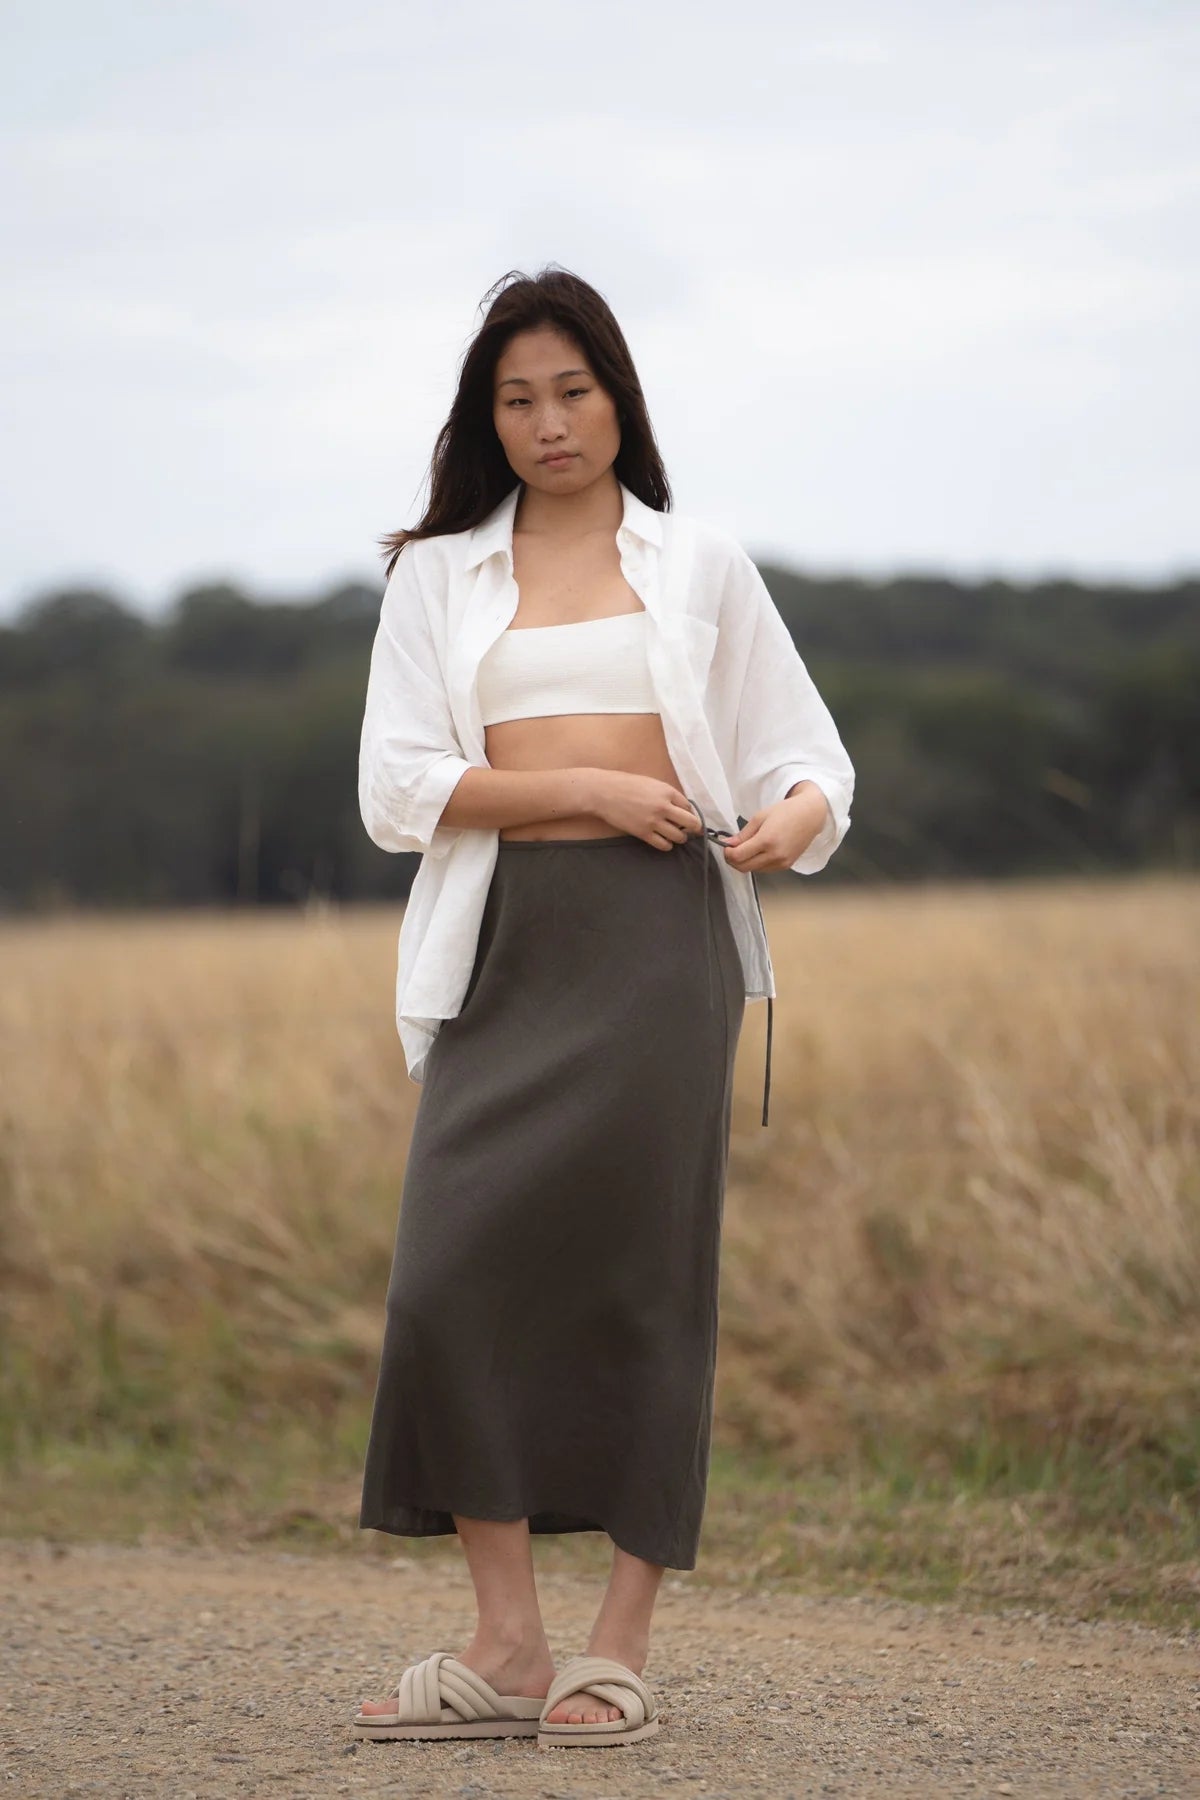 Deep Khaki bias cut linen skirt with an elasticated waist